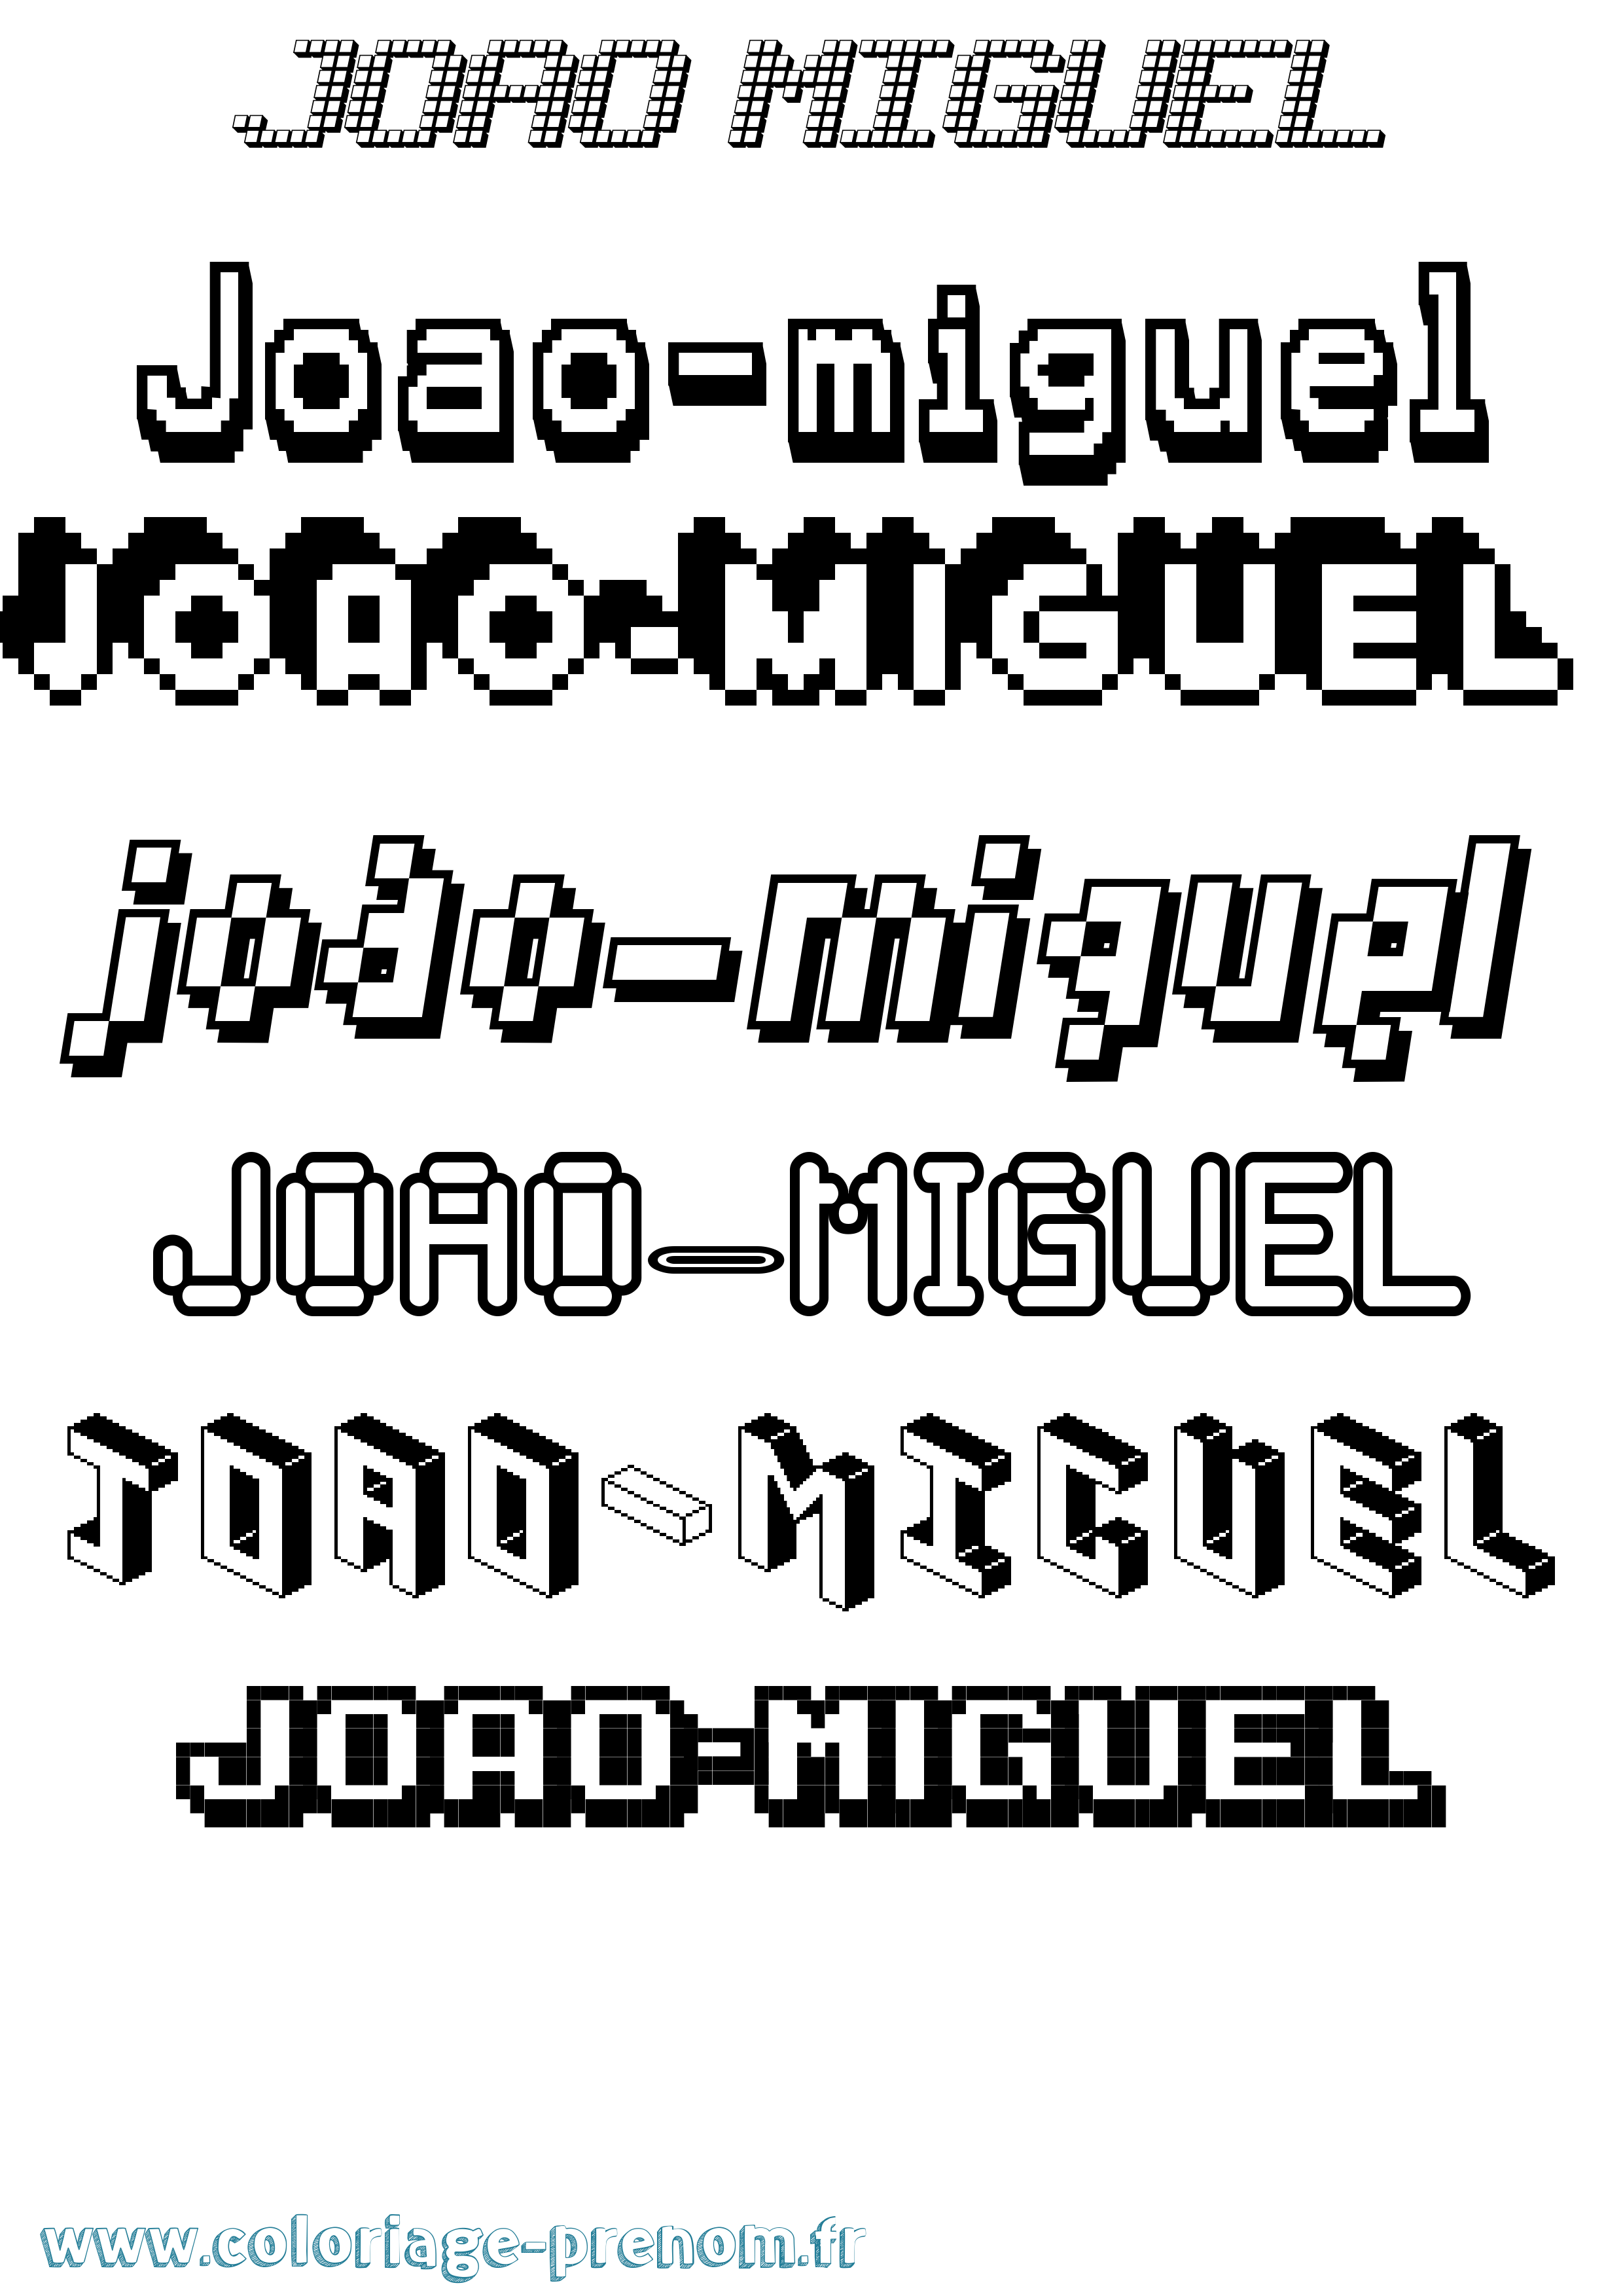 Coloriage prénom Joao-Miguel Pixel